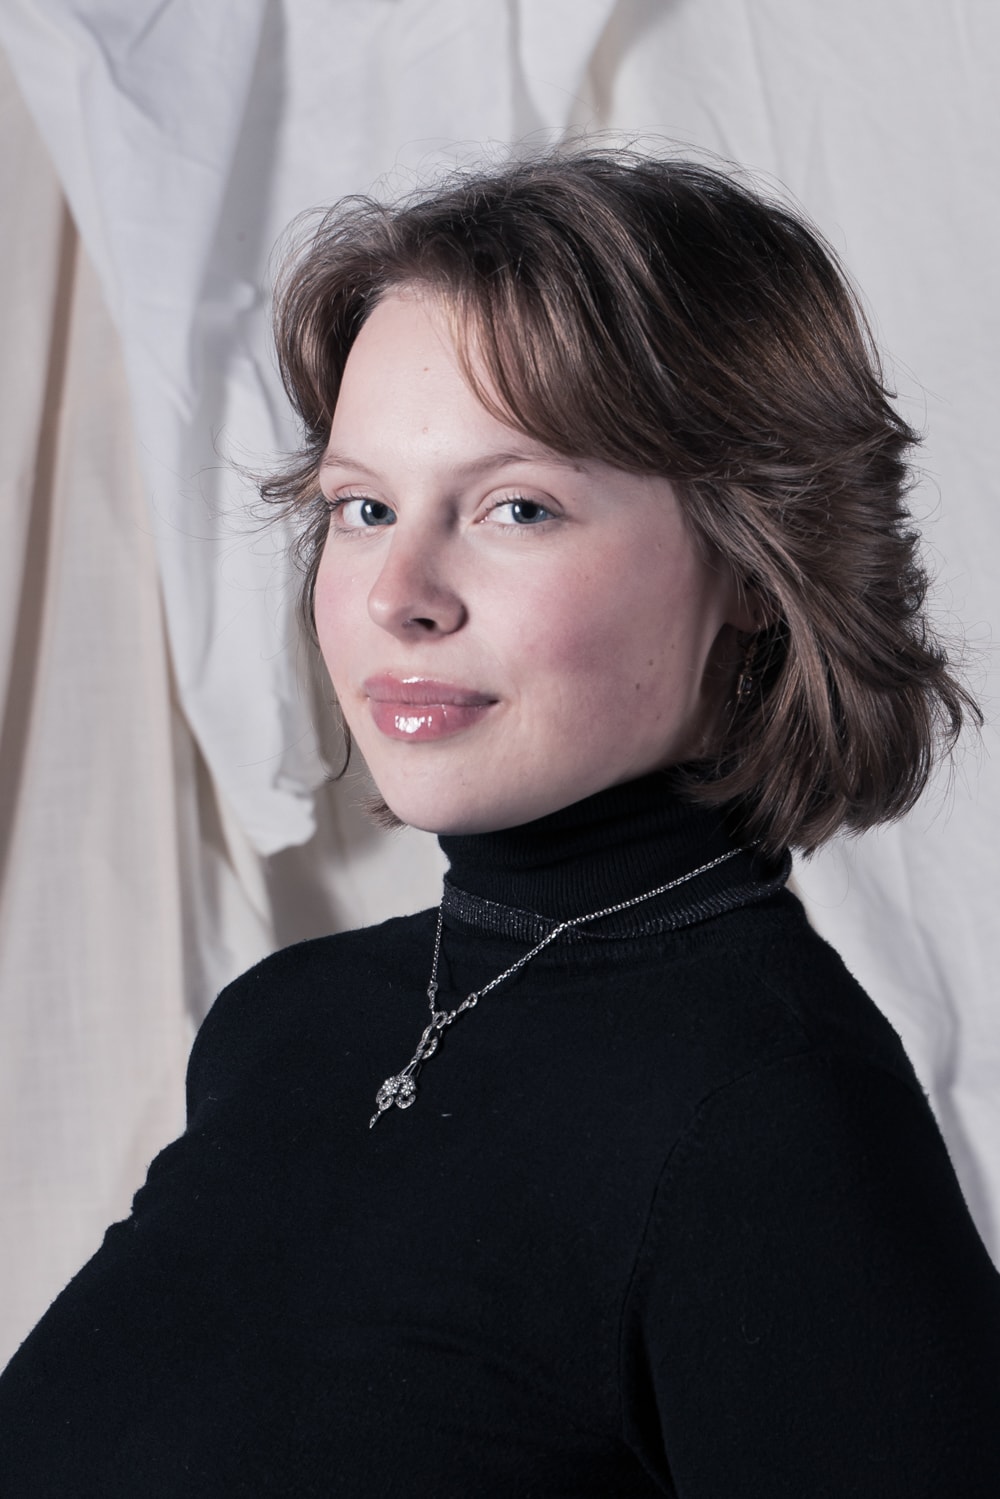 Ann Van den Broeck is Zuster Margaret in Magdalena de musical.